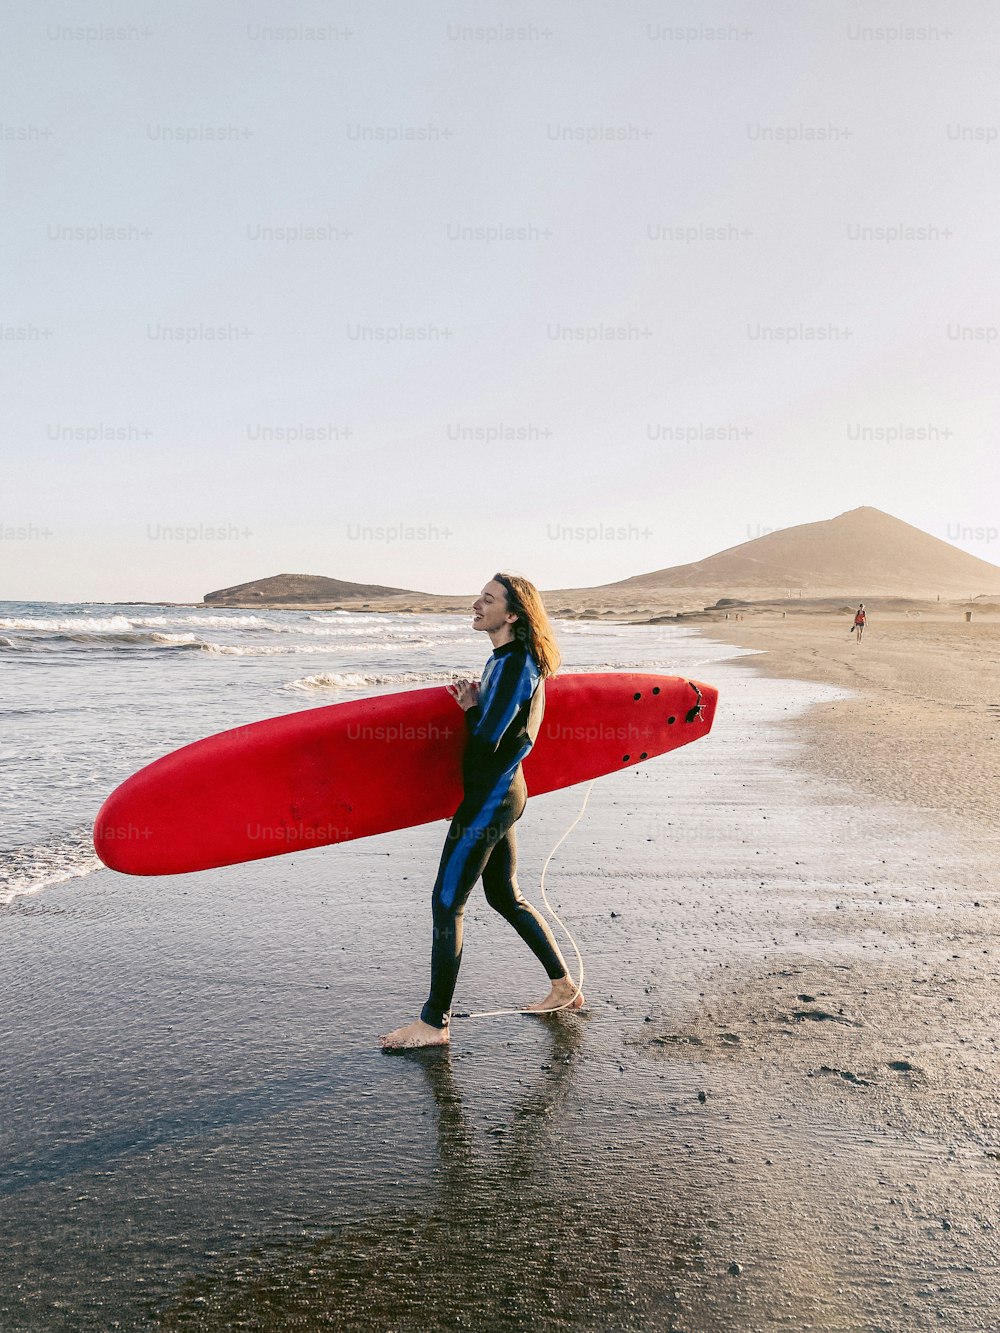 해변에서 서핑보드와 함께 걷는 젊은 서퍼. 휴대 전화에서 만든 이미지